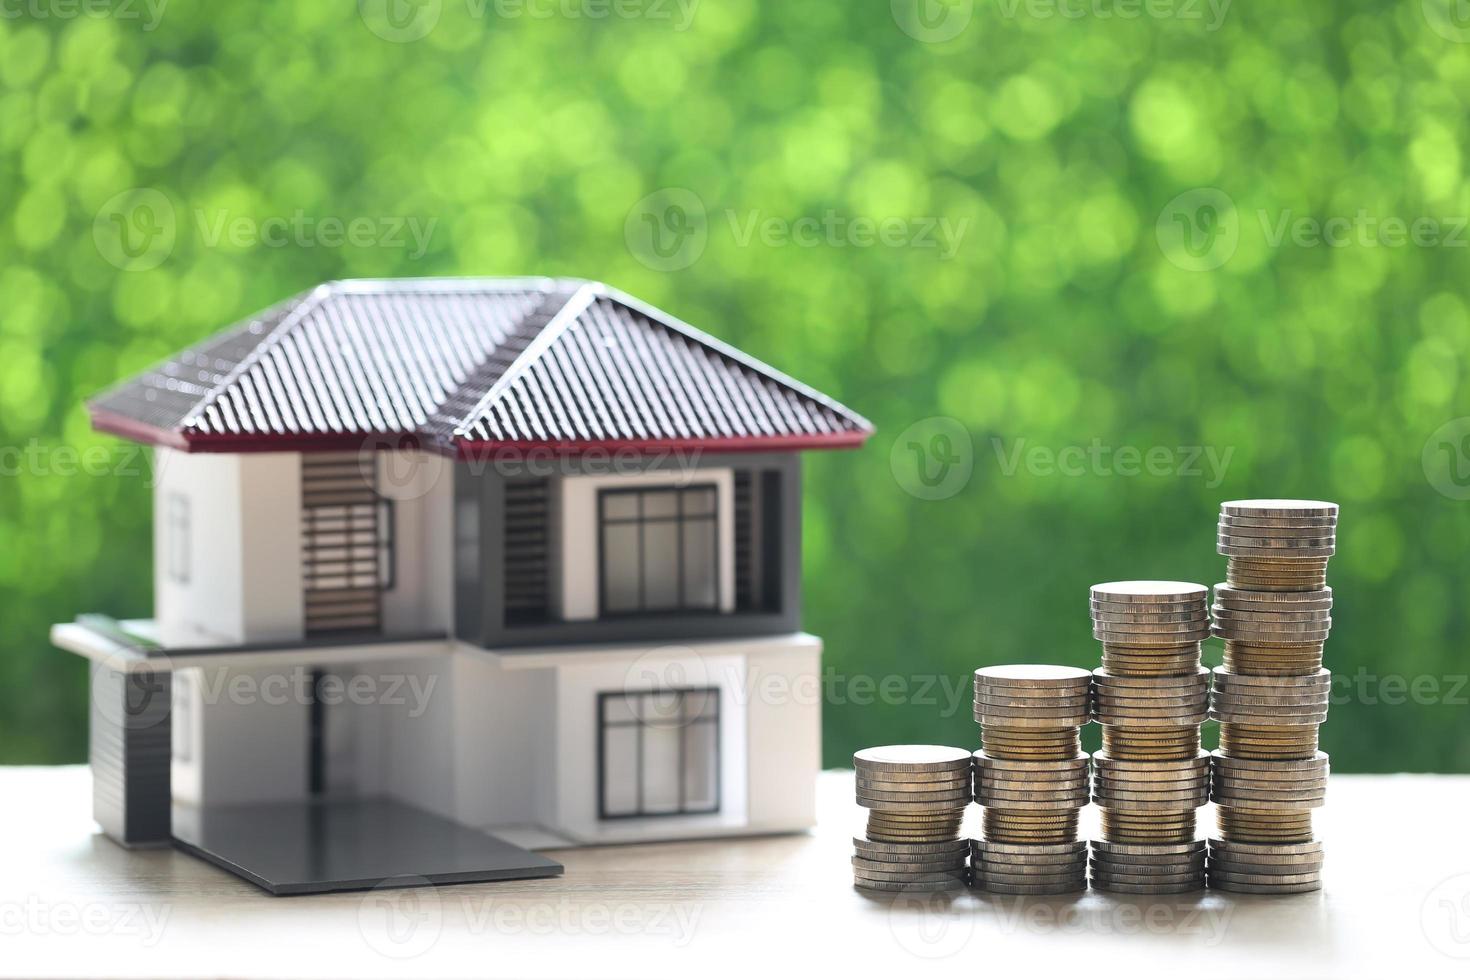 modellhus och stack med myntpengar på naturlig grön bakgrund foto